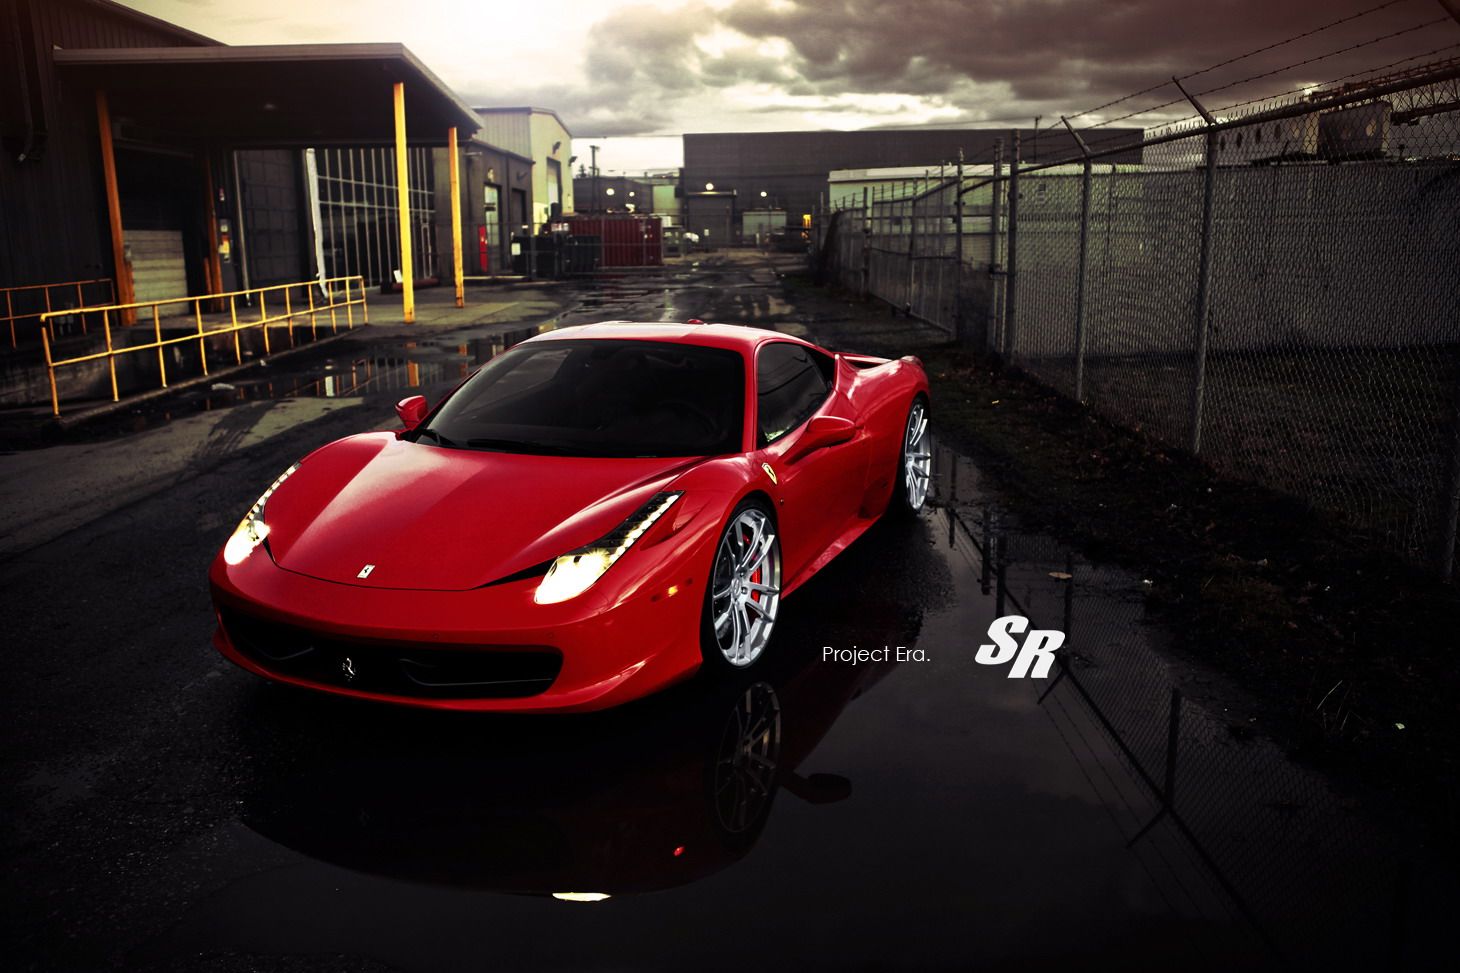 2012 Ferrari 458 Italia Project Era by SR Auto Group